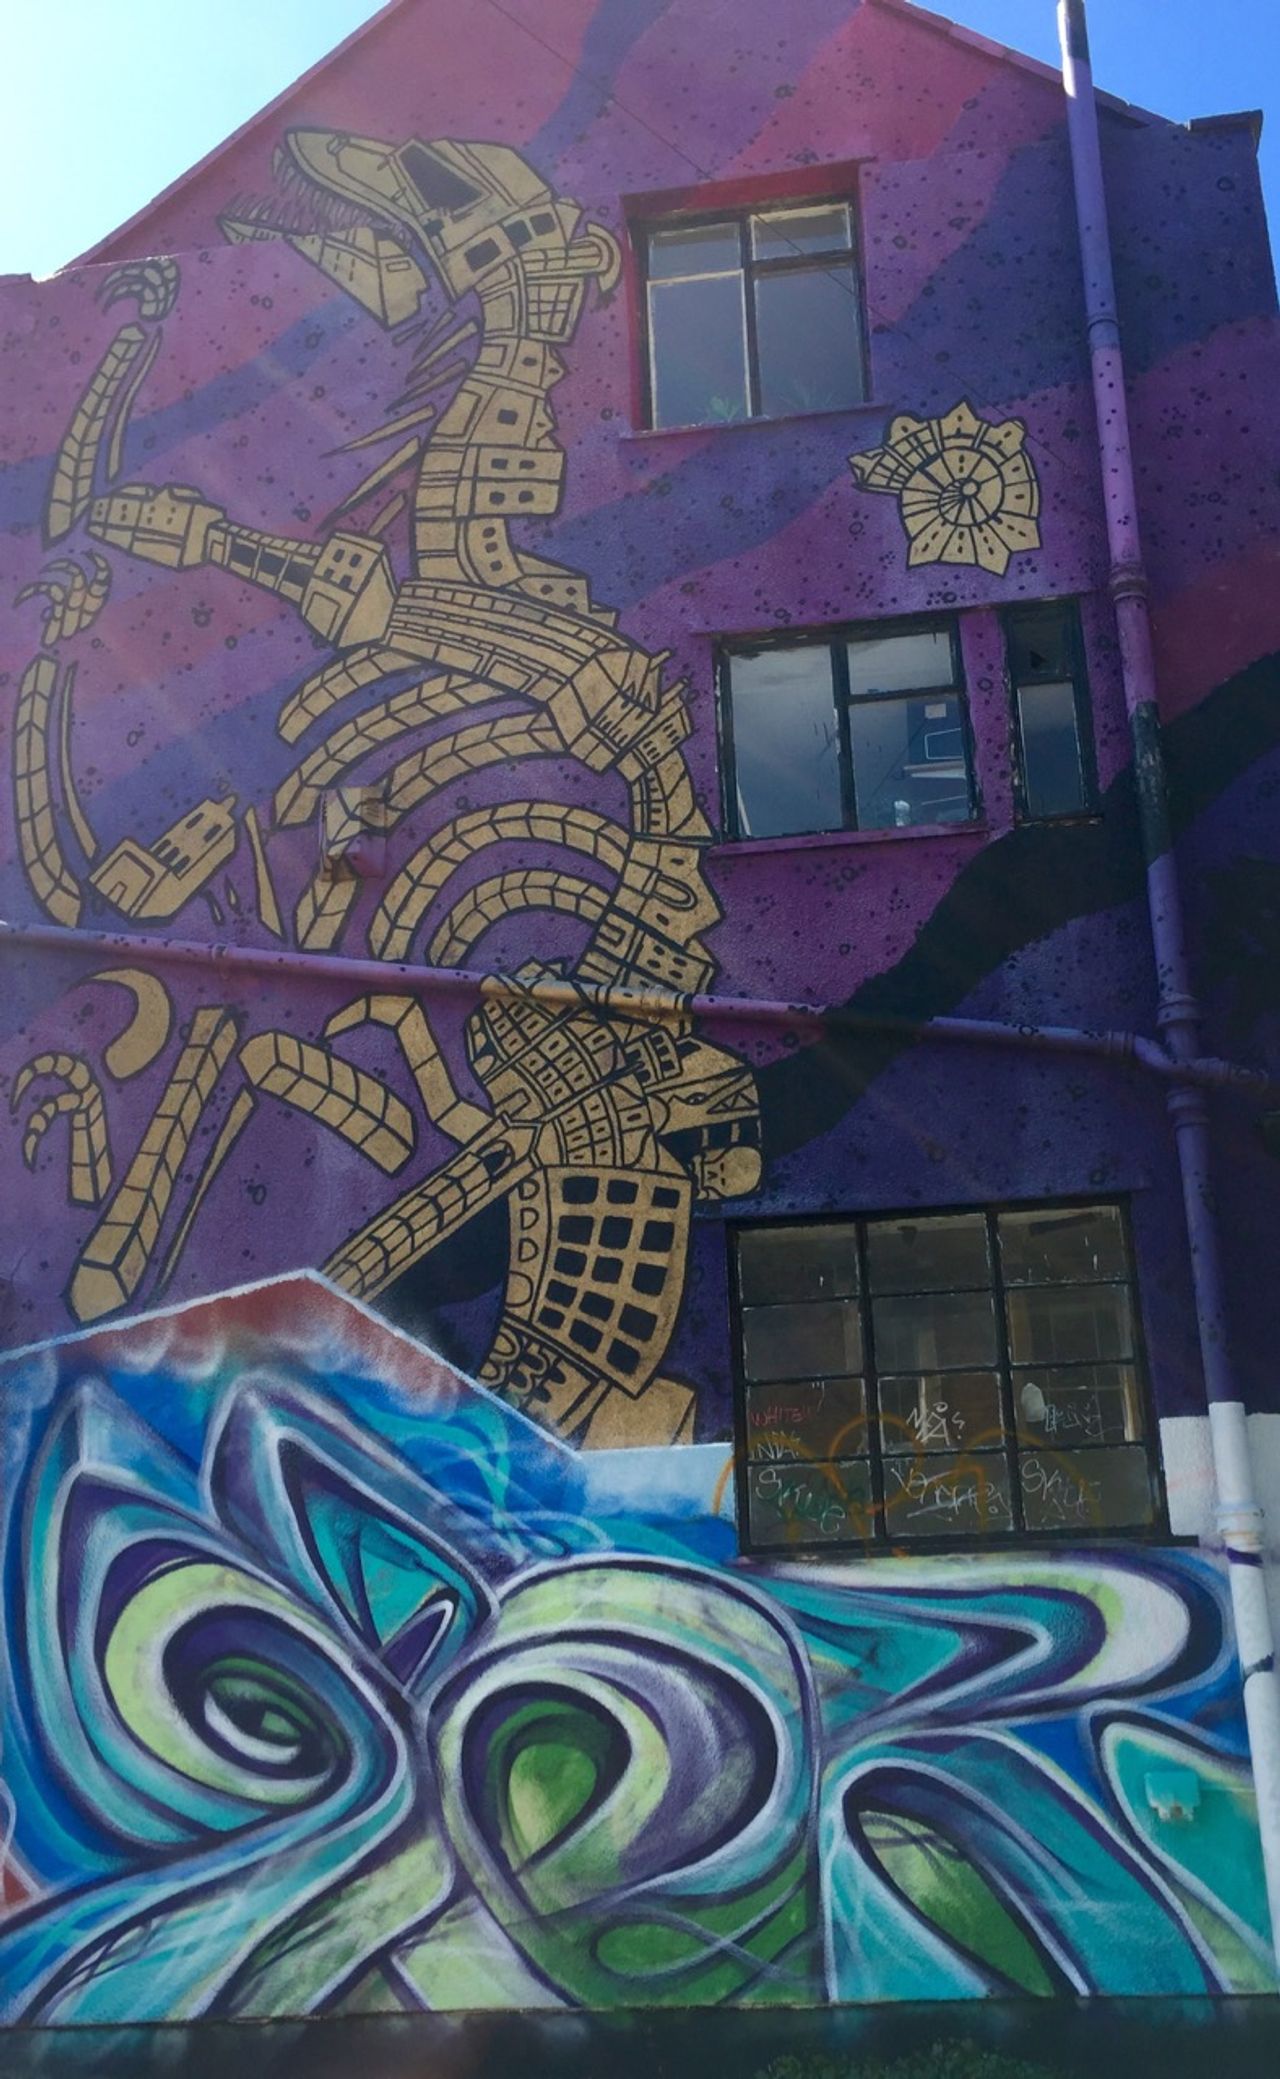 Graffiti of a large mechanical dragon.